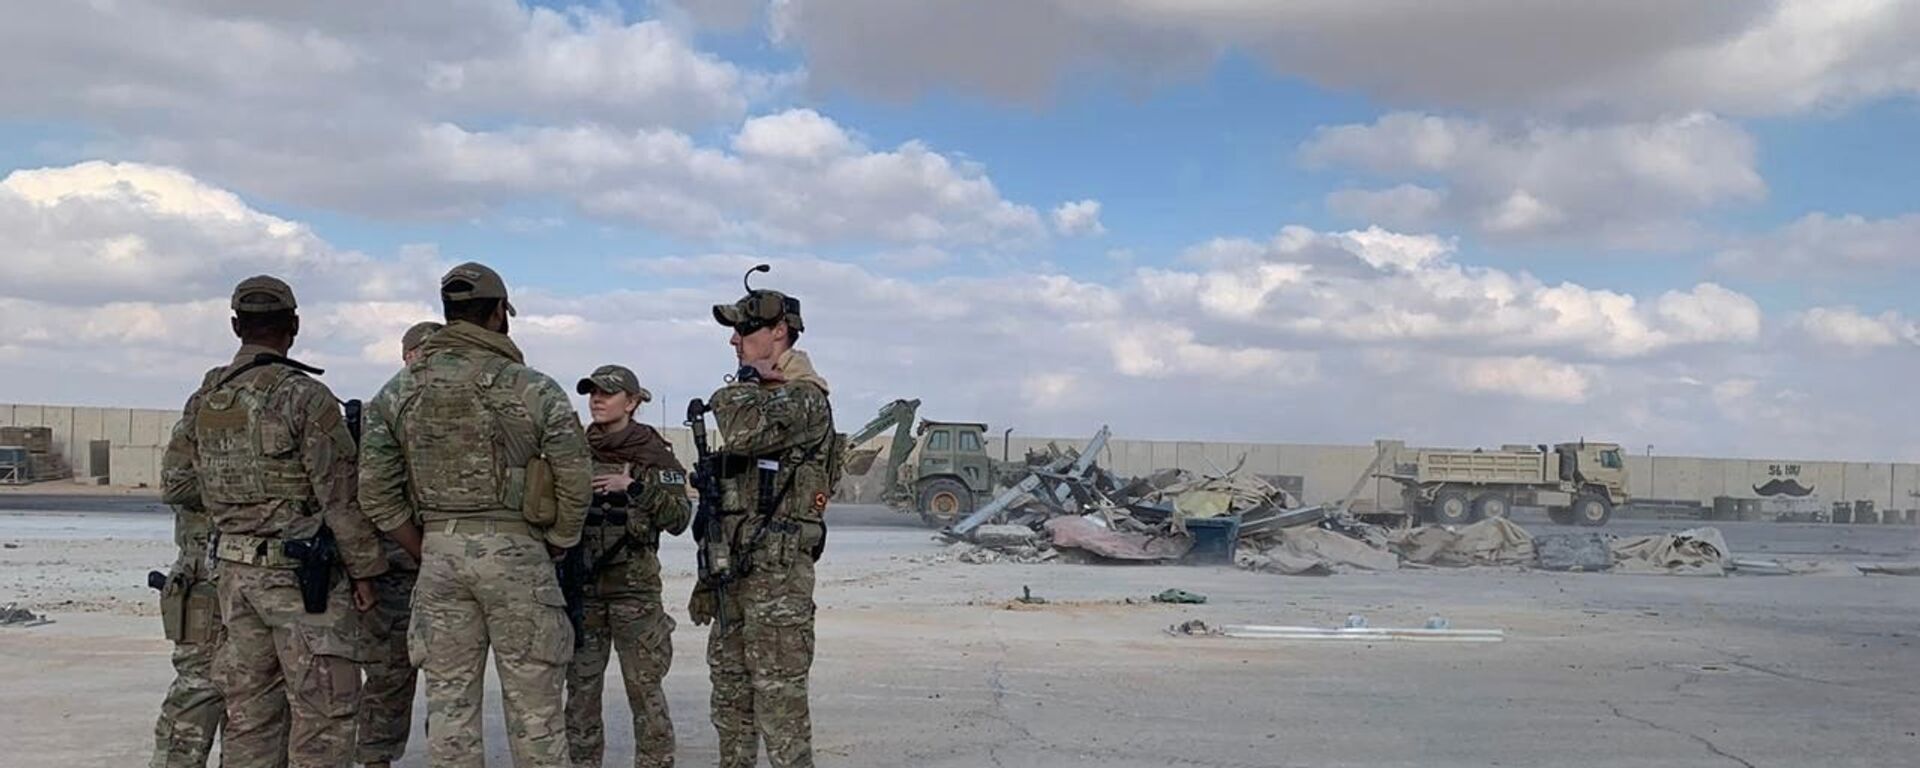 جنود أمريكيون يقفون بينما تقوم الجرافات بإزالة الأنقاض والحطام في قاعدة عين الأسد الجوية في الأنبار في العراق  - سبوتنيك عربي, 1920, 21.12.2021